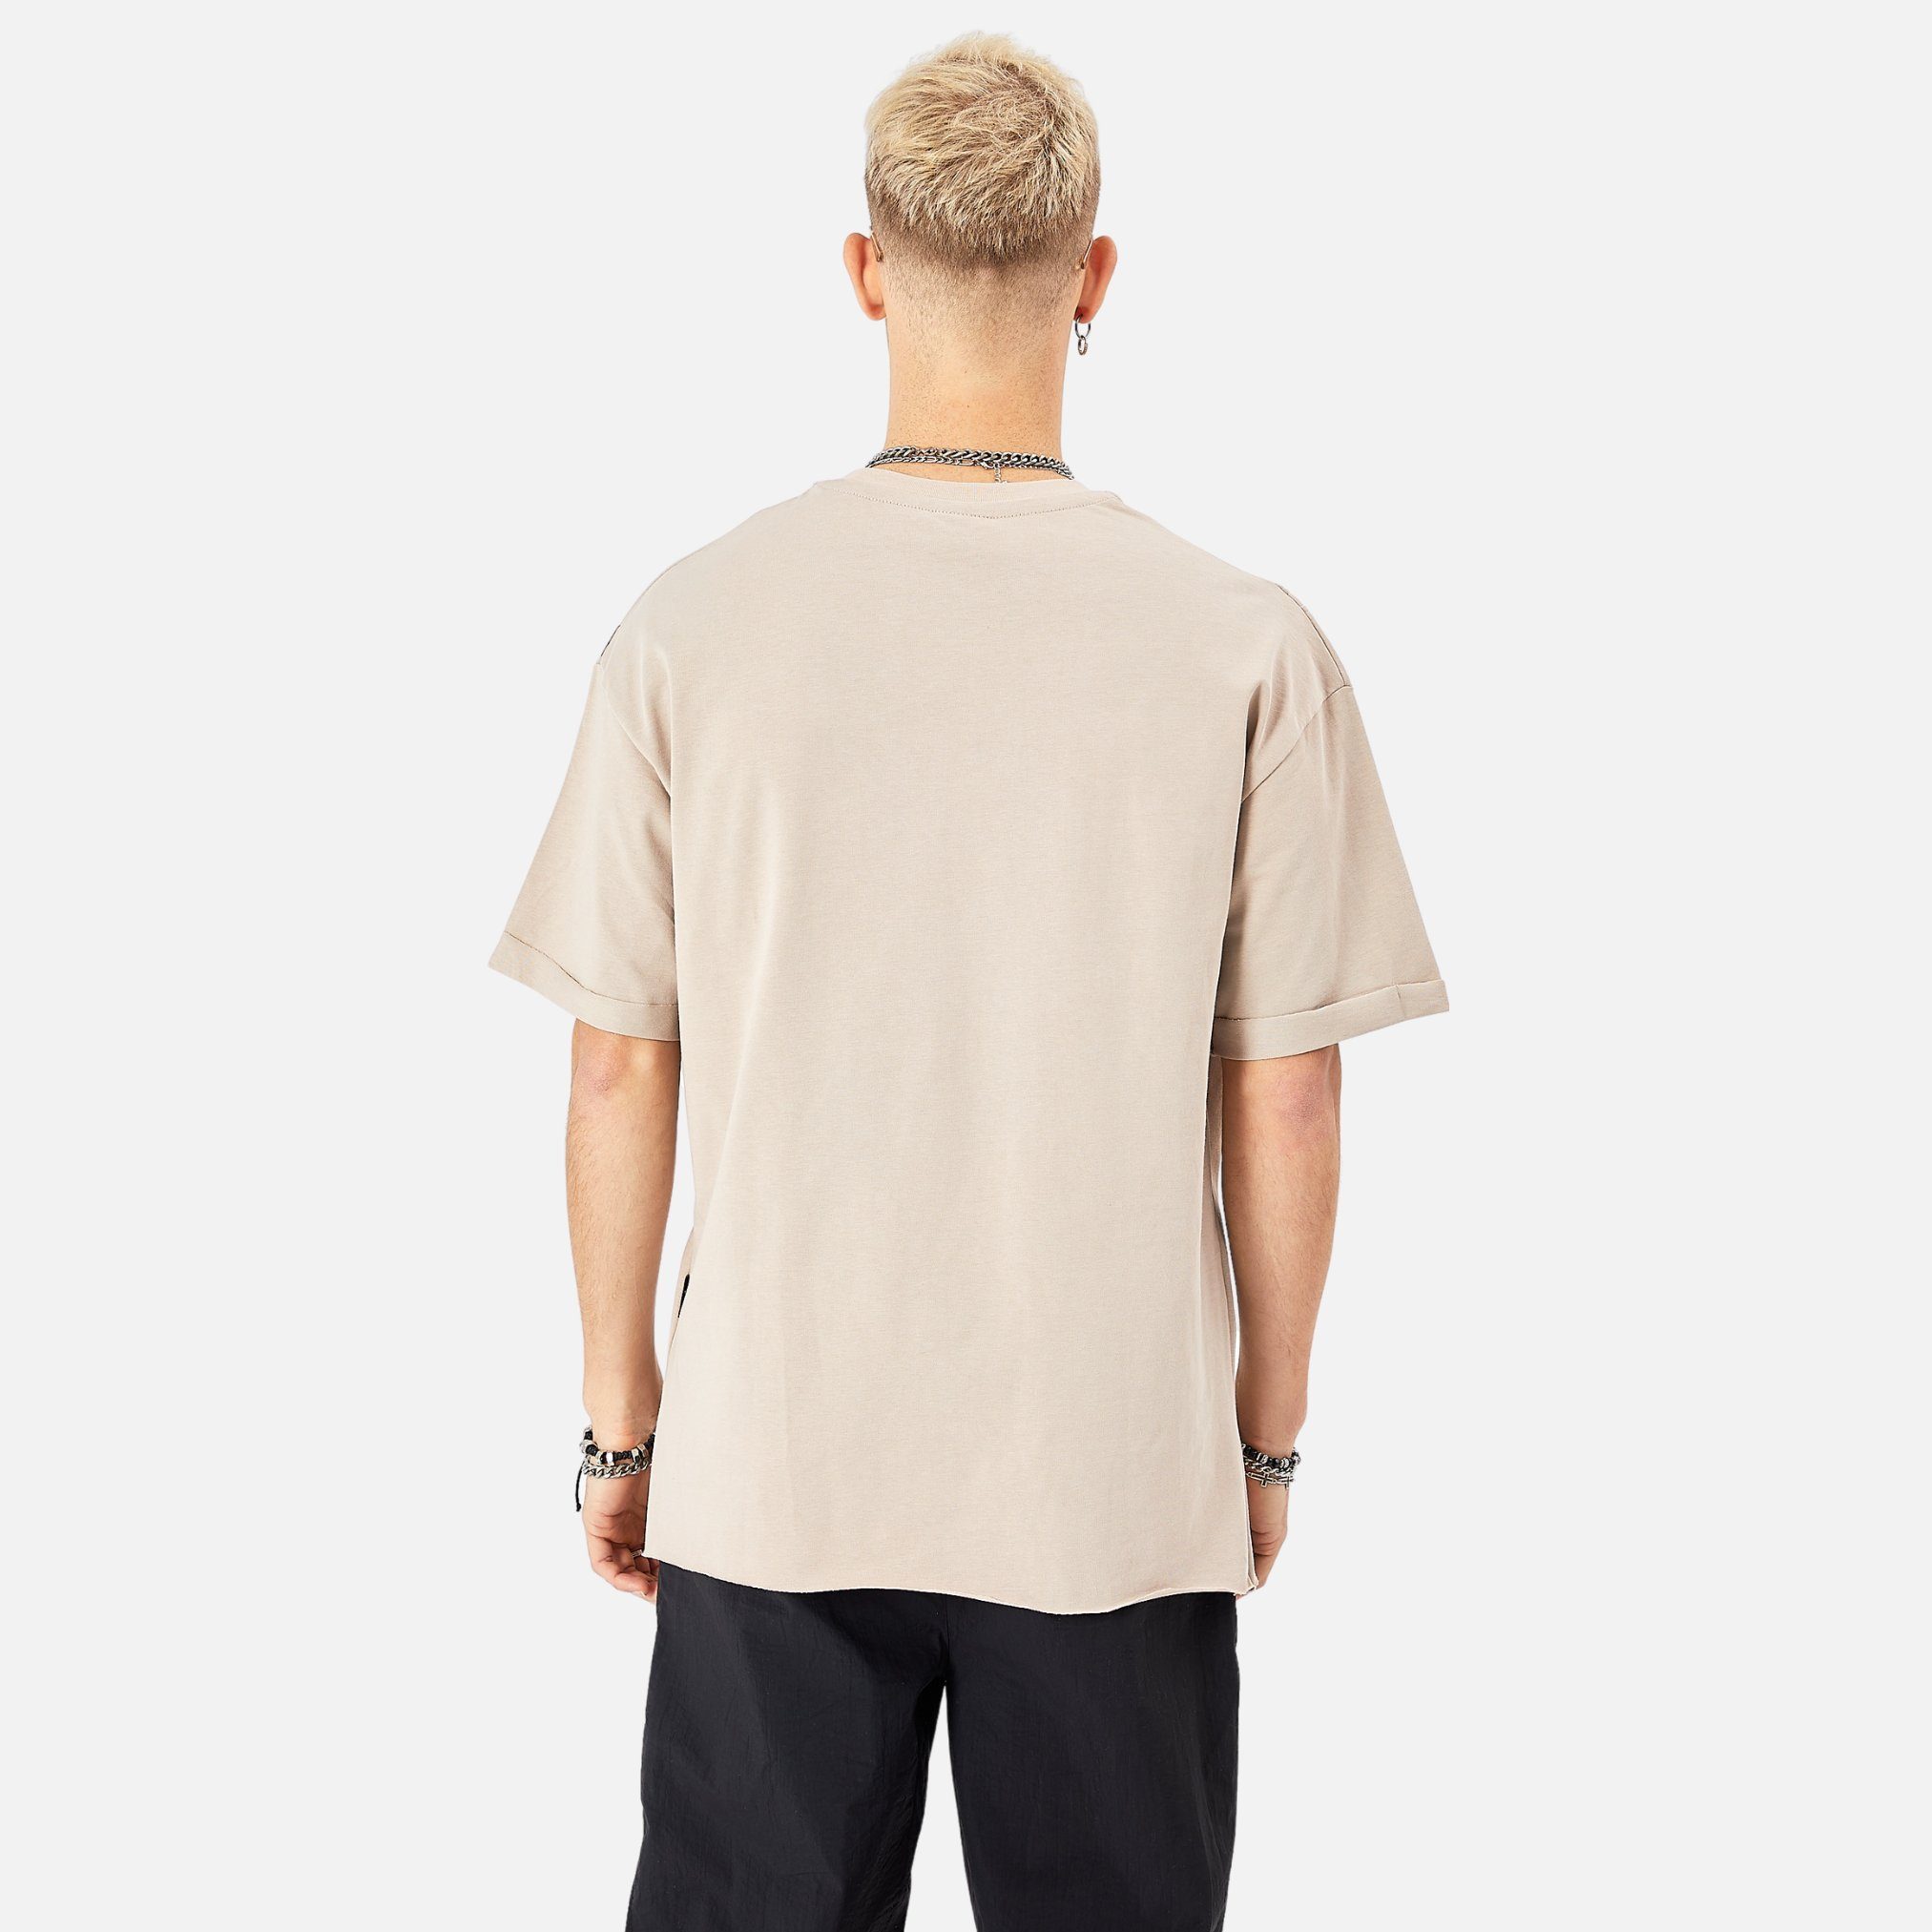 T-Shirt COFI 100% 320gsm ZIP Fit Beige Herren Oversize Cotton Casuals T-Shirt